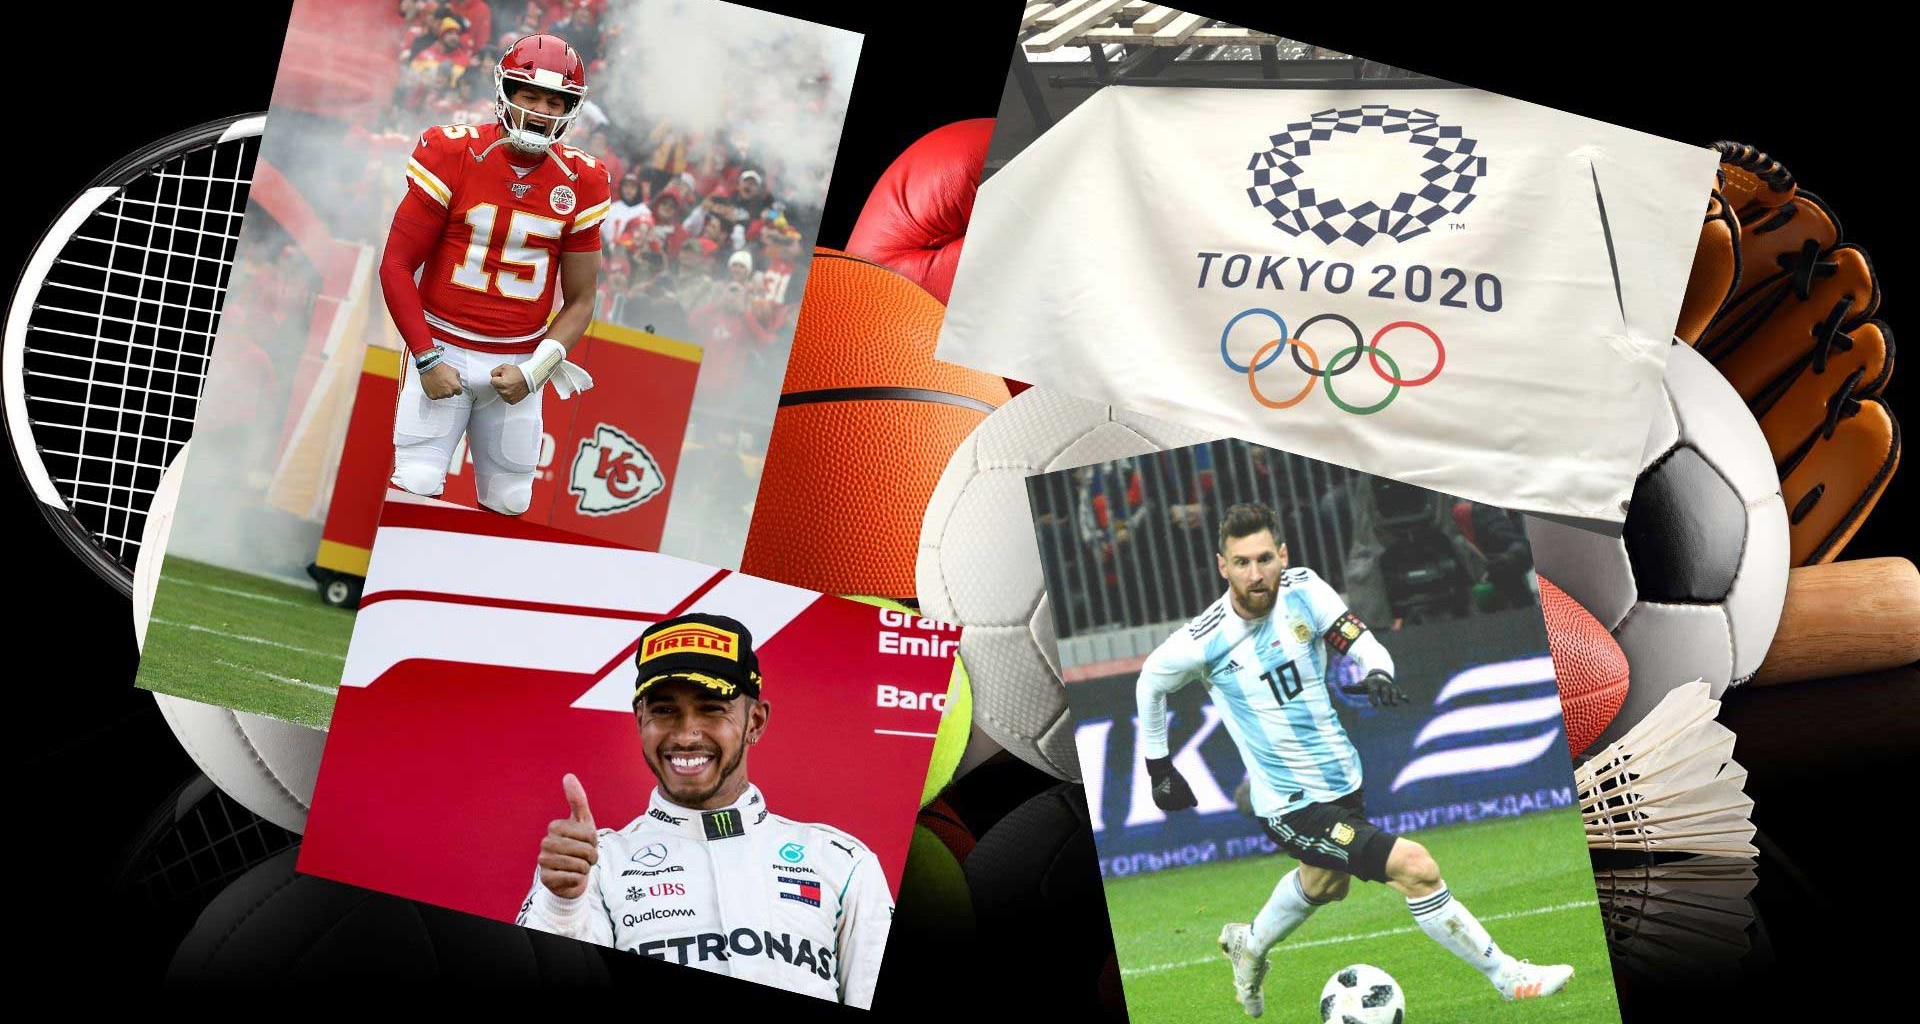 Lo más relevante que viene para el deporte en el 2020 | Tecnológico de  Monterrey